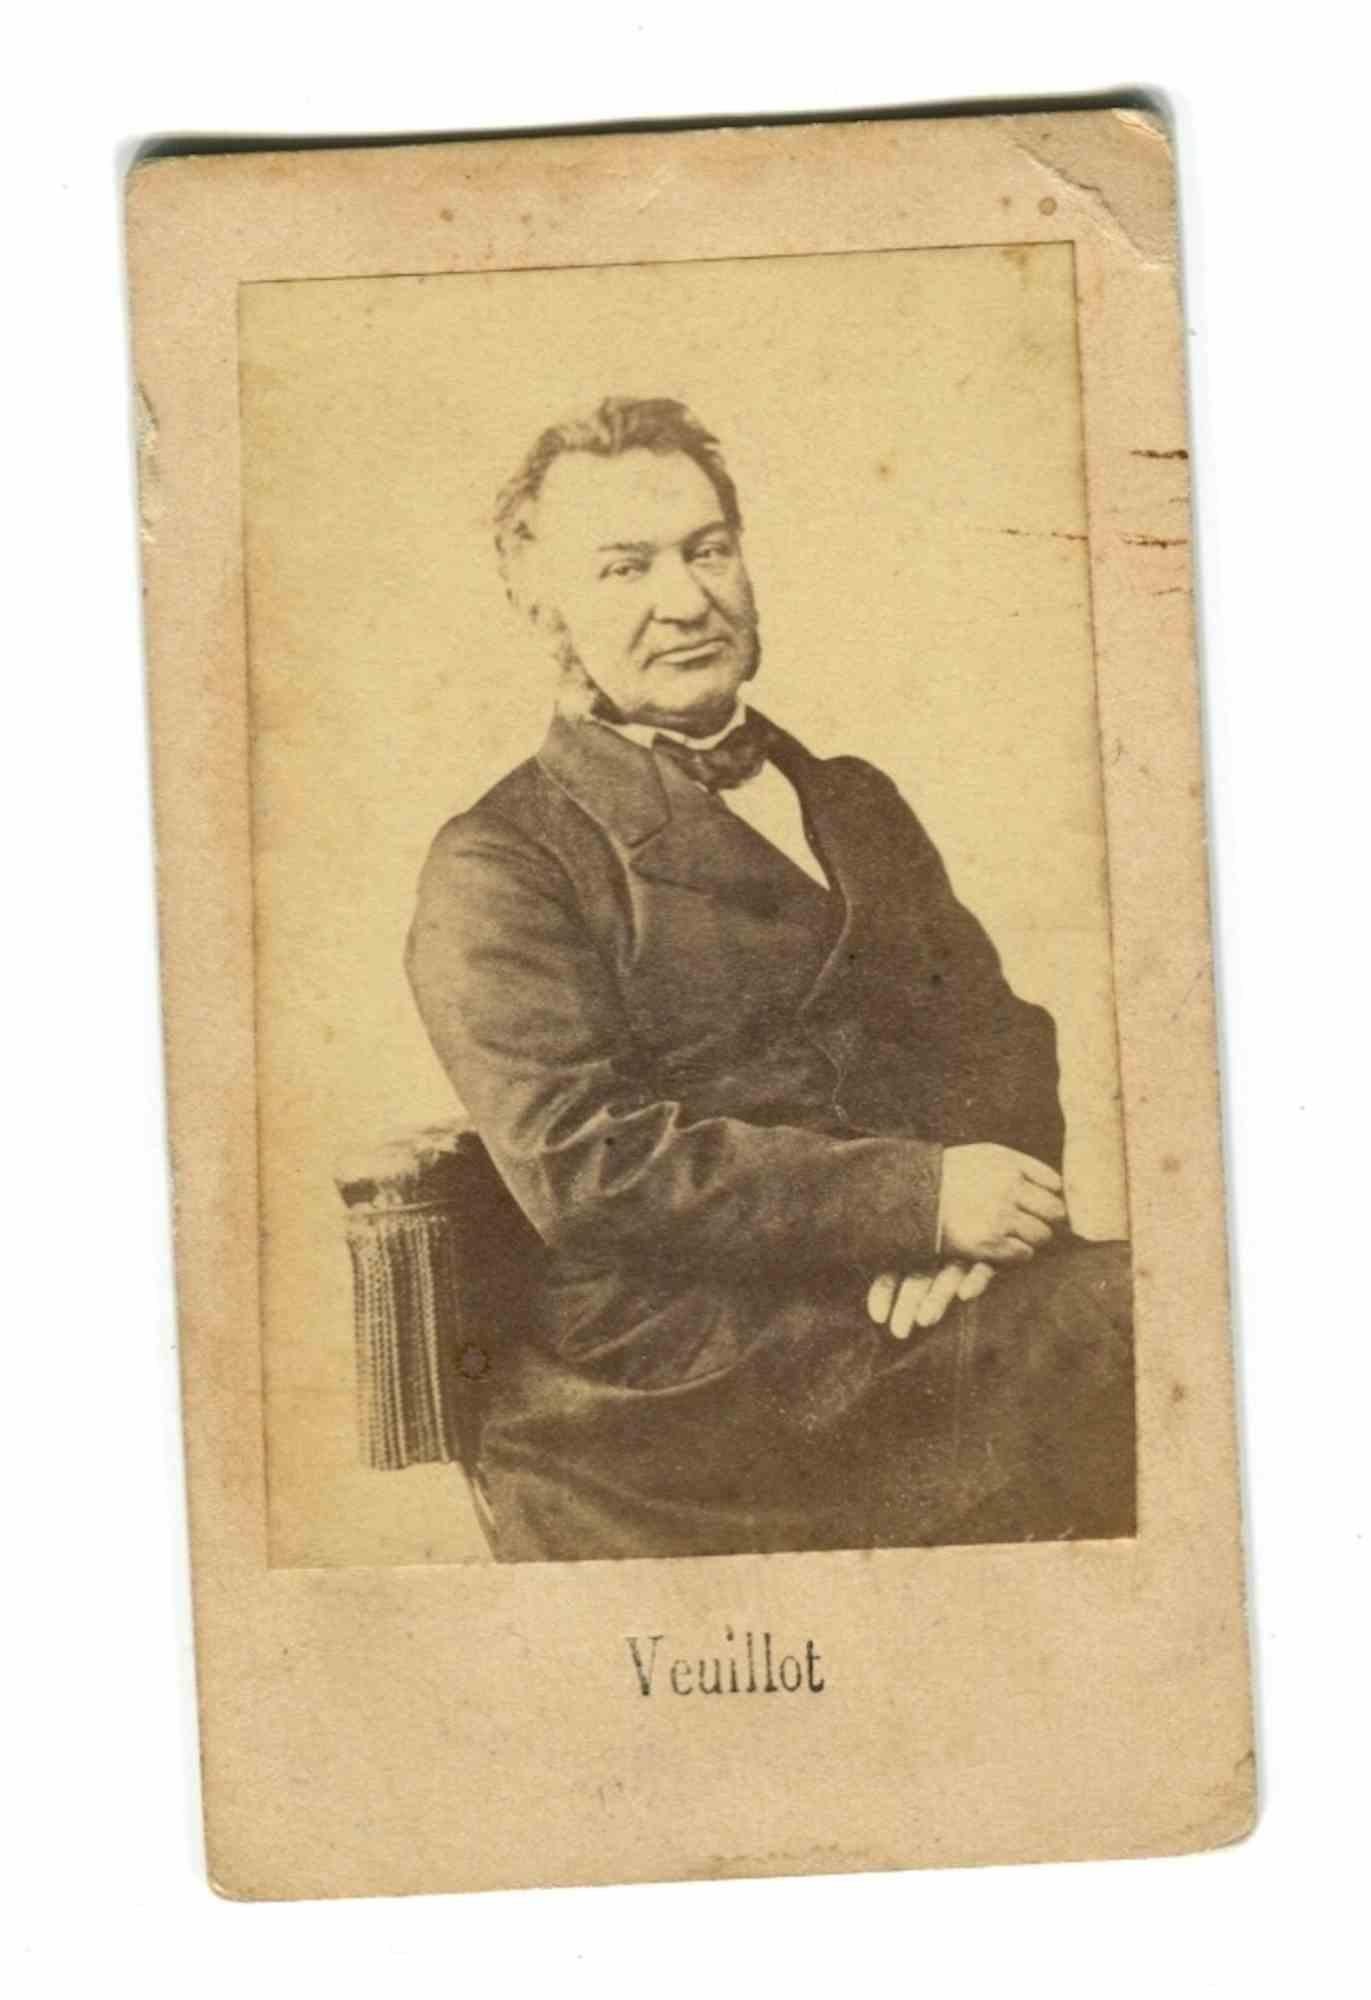 Unknown Portrait Photograph - Historical Photo - Portrait of Louis Veuillot - Vintage Photo - 19th Century 